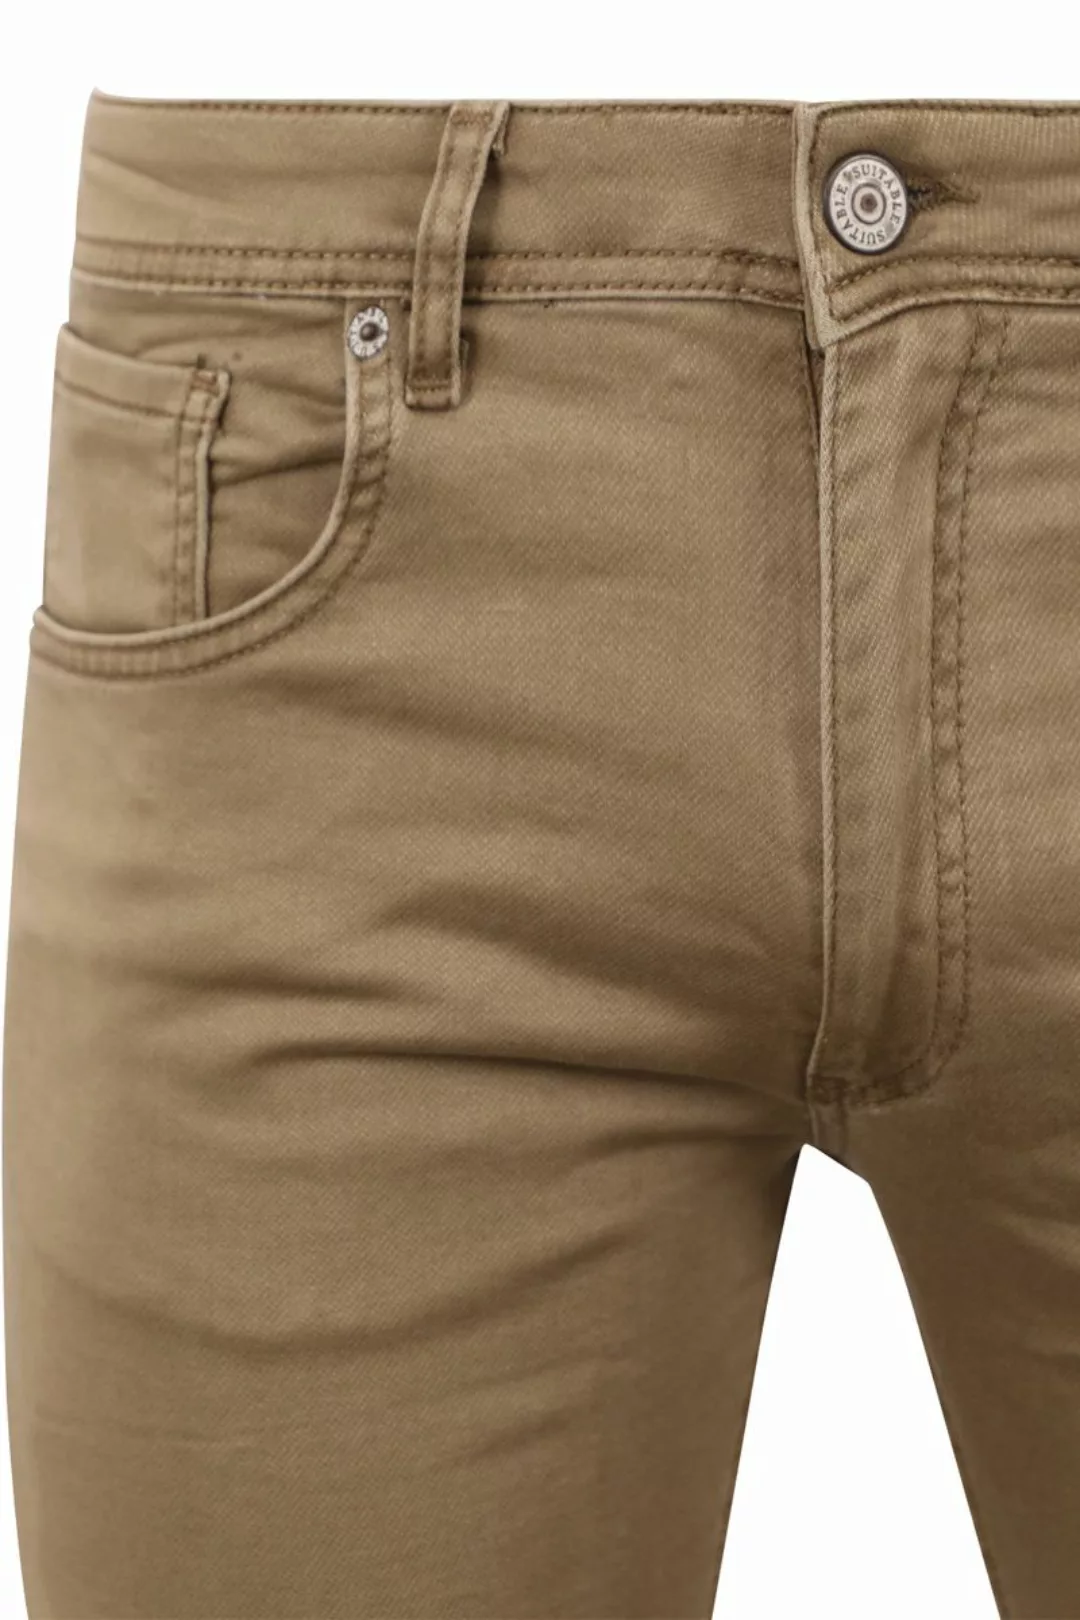 Suitable Kant Jeans Khaki - Größe W 33 - L 36 günstig online kaufen